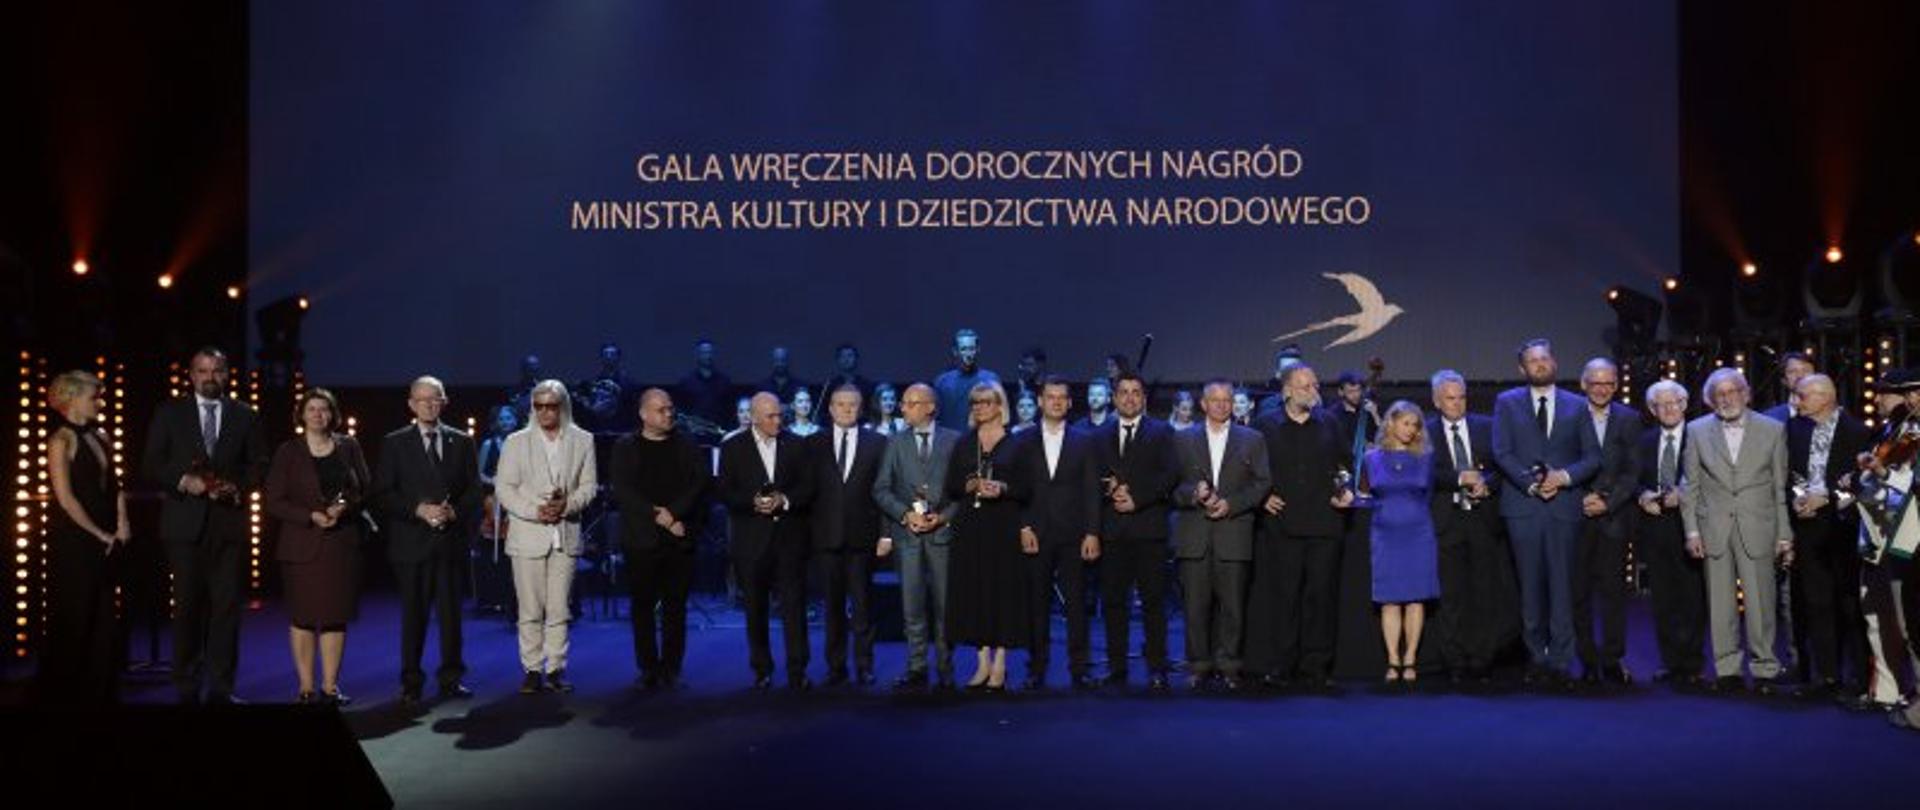 Doroczne Nagrody Ministra Kultury i Dziedzictwa Narodowego wręczone, fot Danuta Matloch